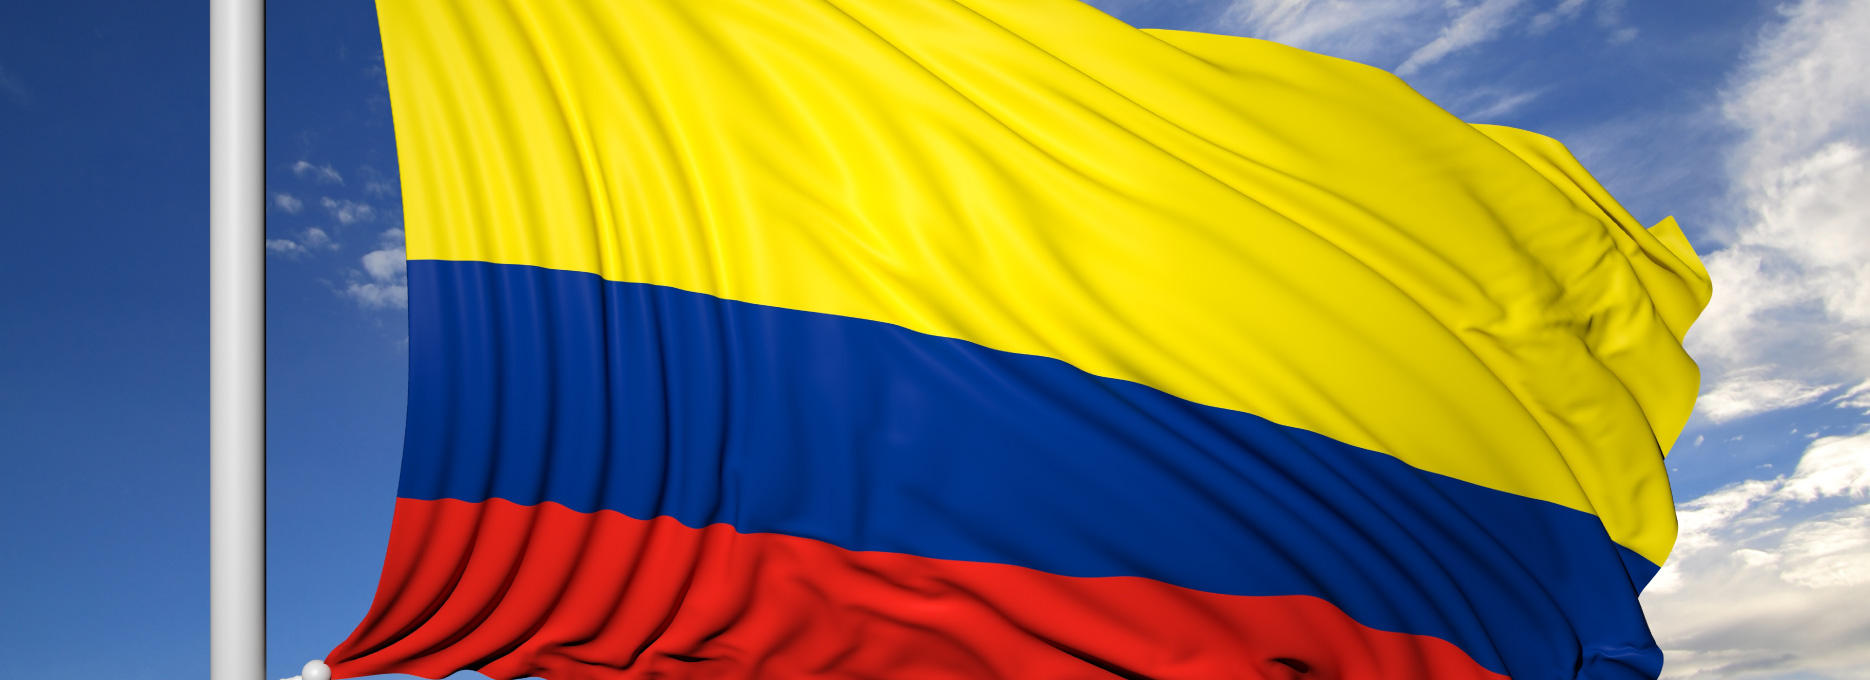 imagen-bandera-Colombia.jpg